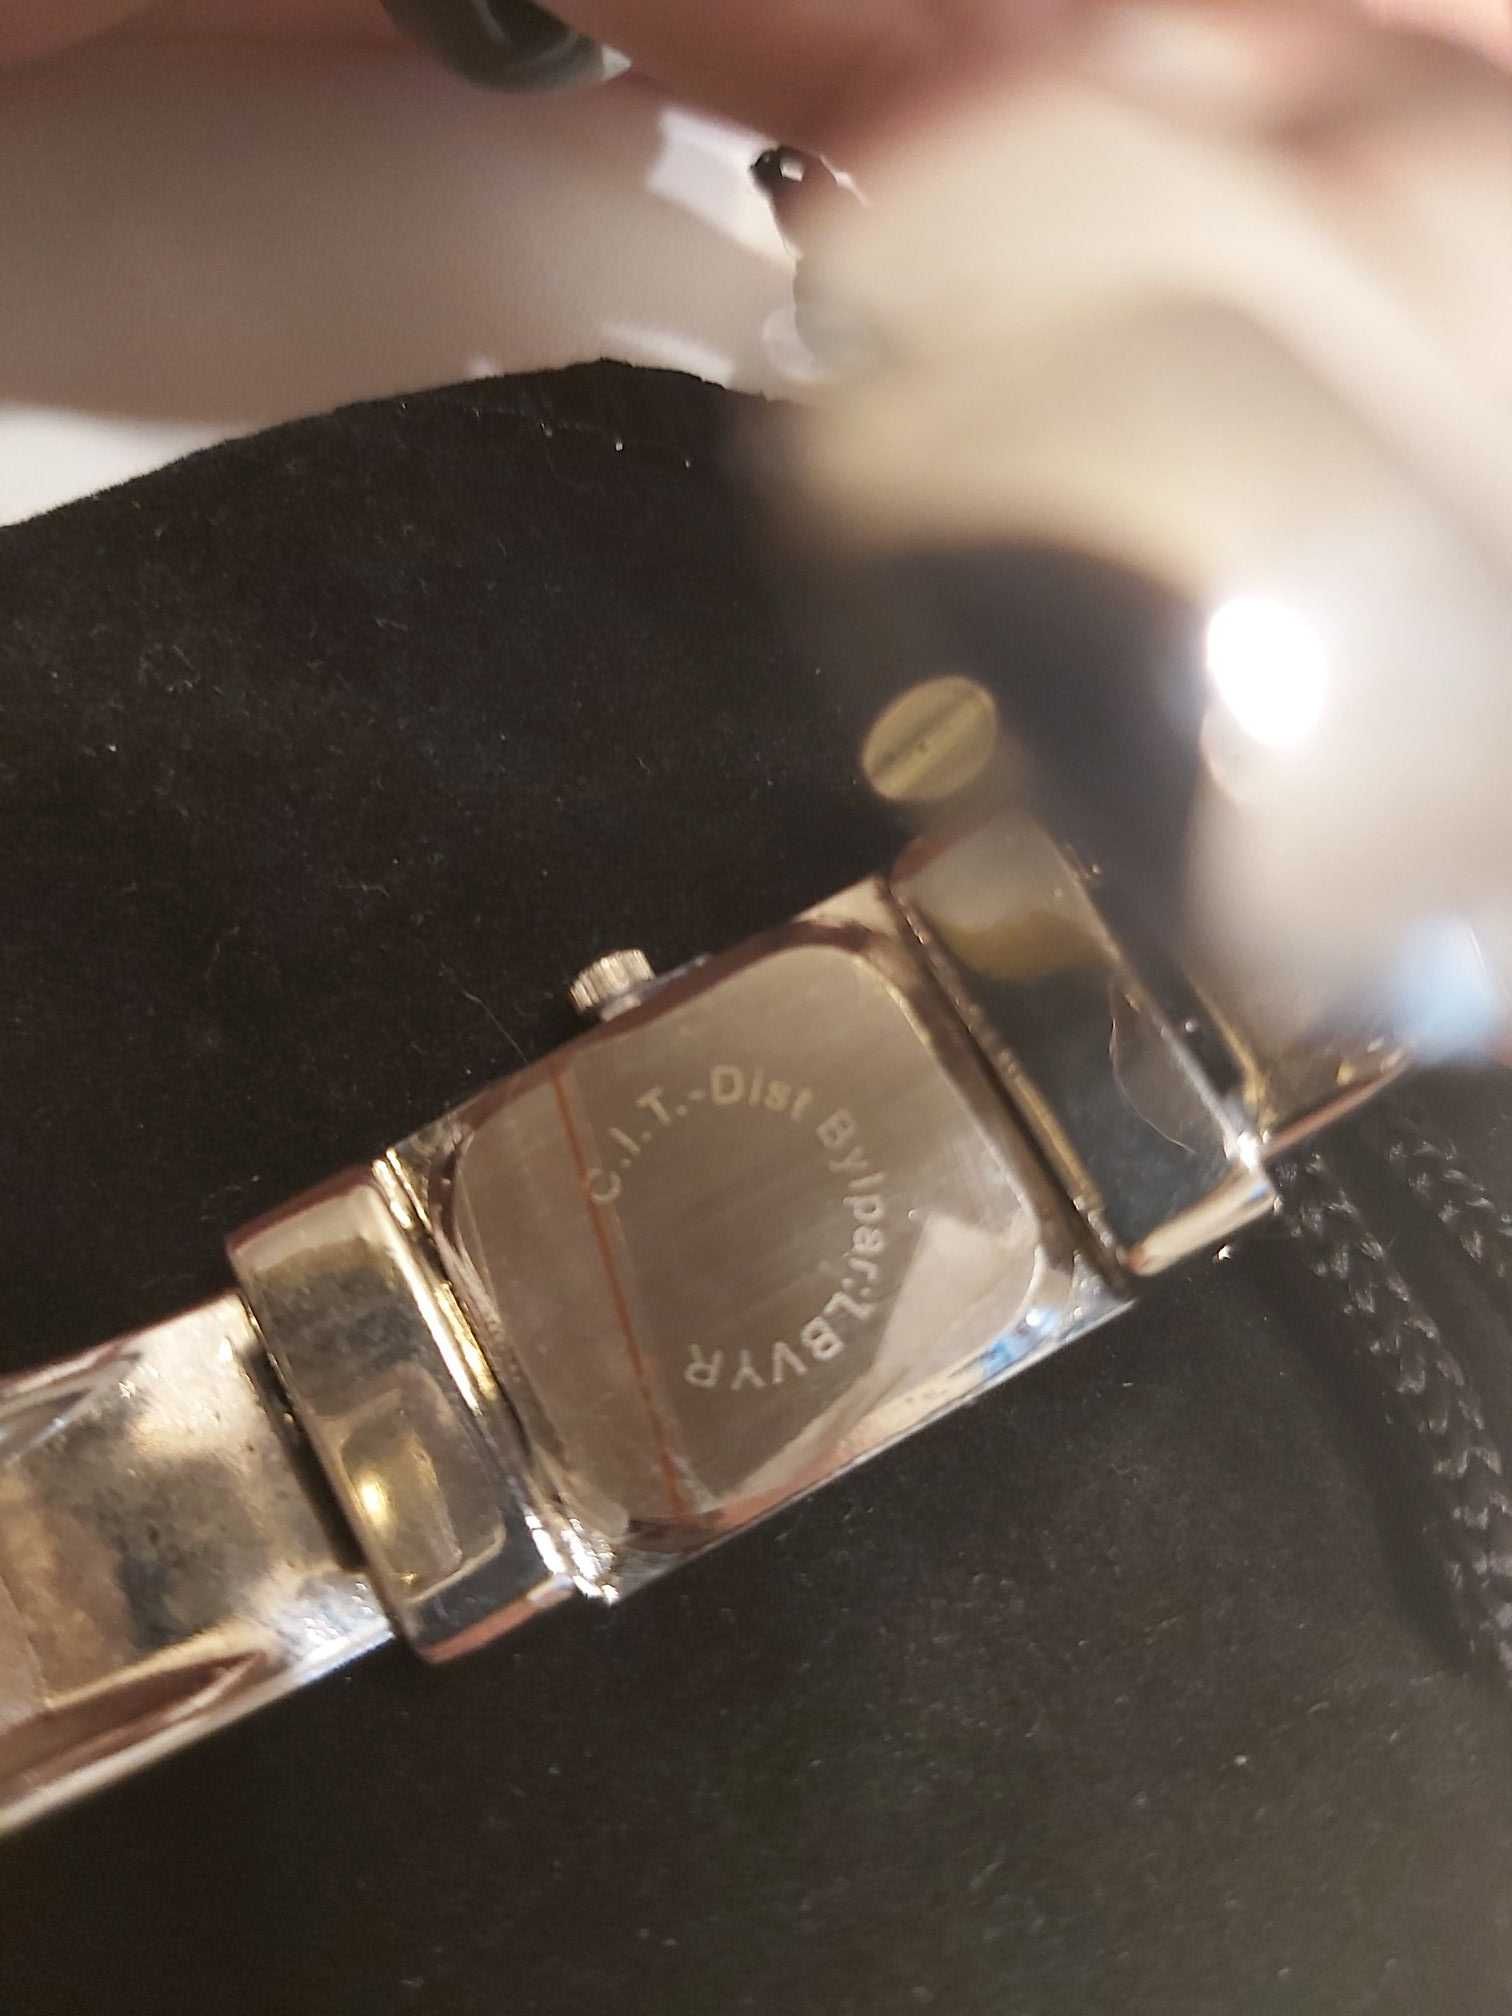 Наручные часы Ив Роше, женские, часы-браслет, новые, розовый+серебро